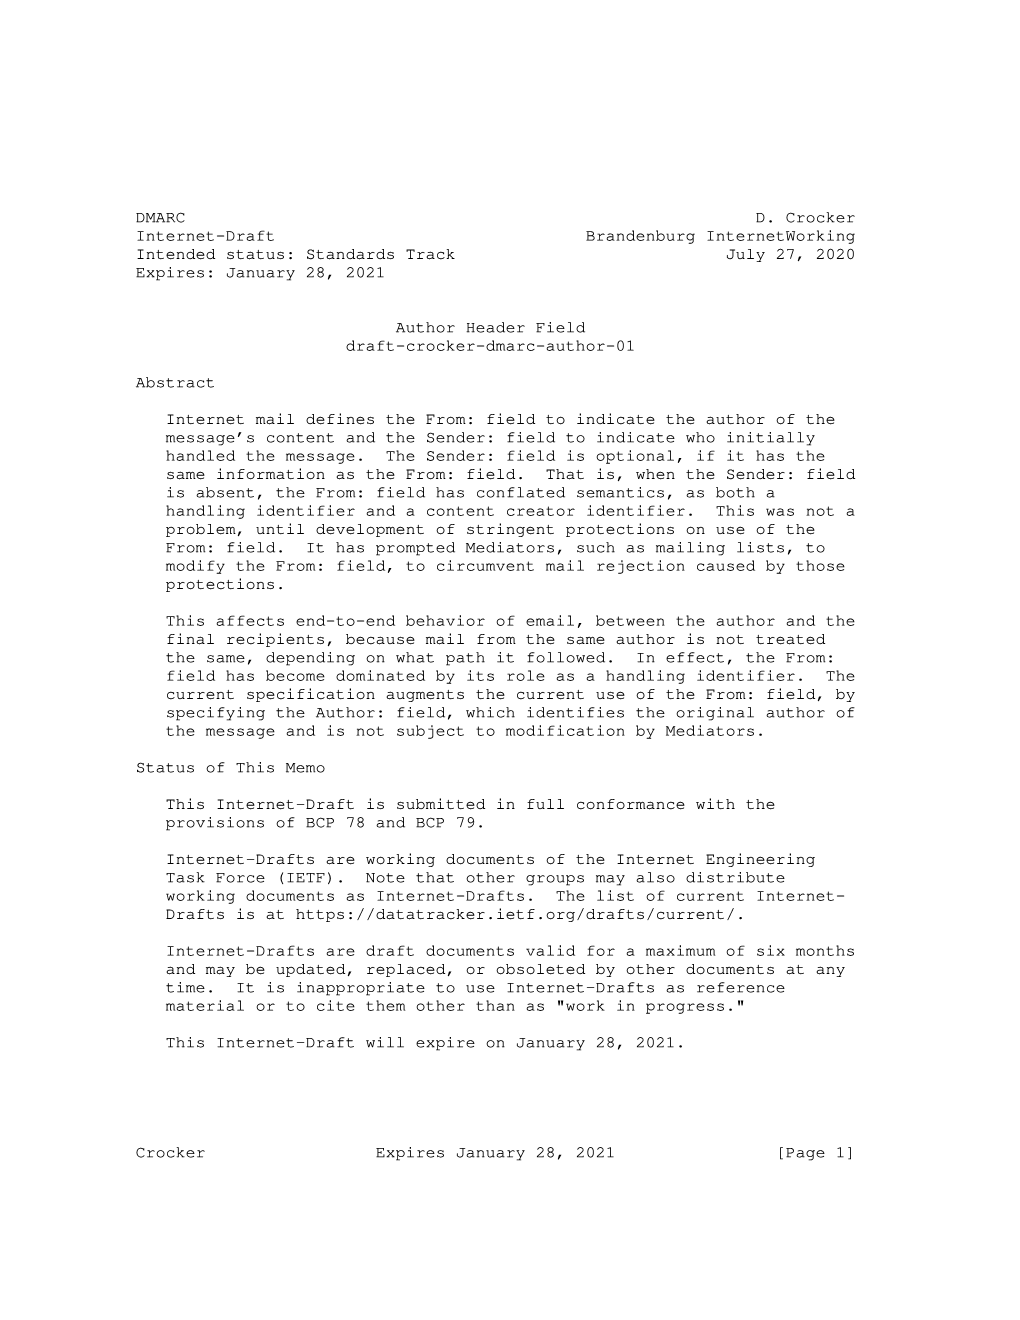 DMARC D. Crocker Internet-Draft Brandenburg Internetworking Intended Status: Standards Track July 27, 2020 Expires: January 28, 2021